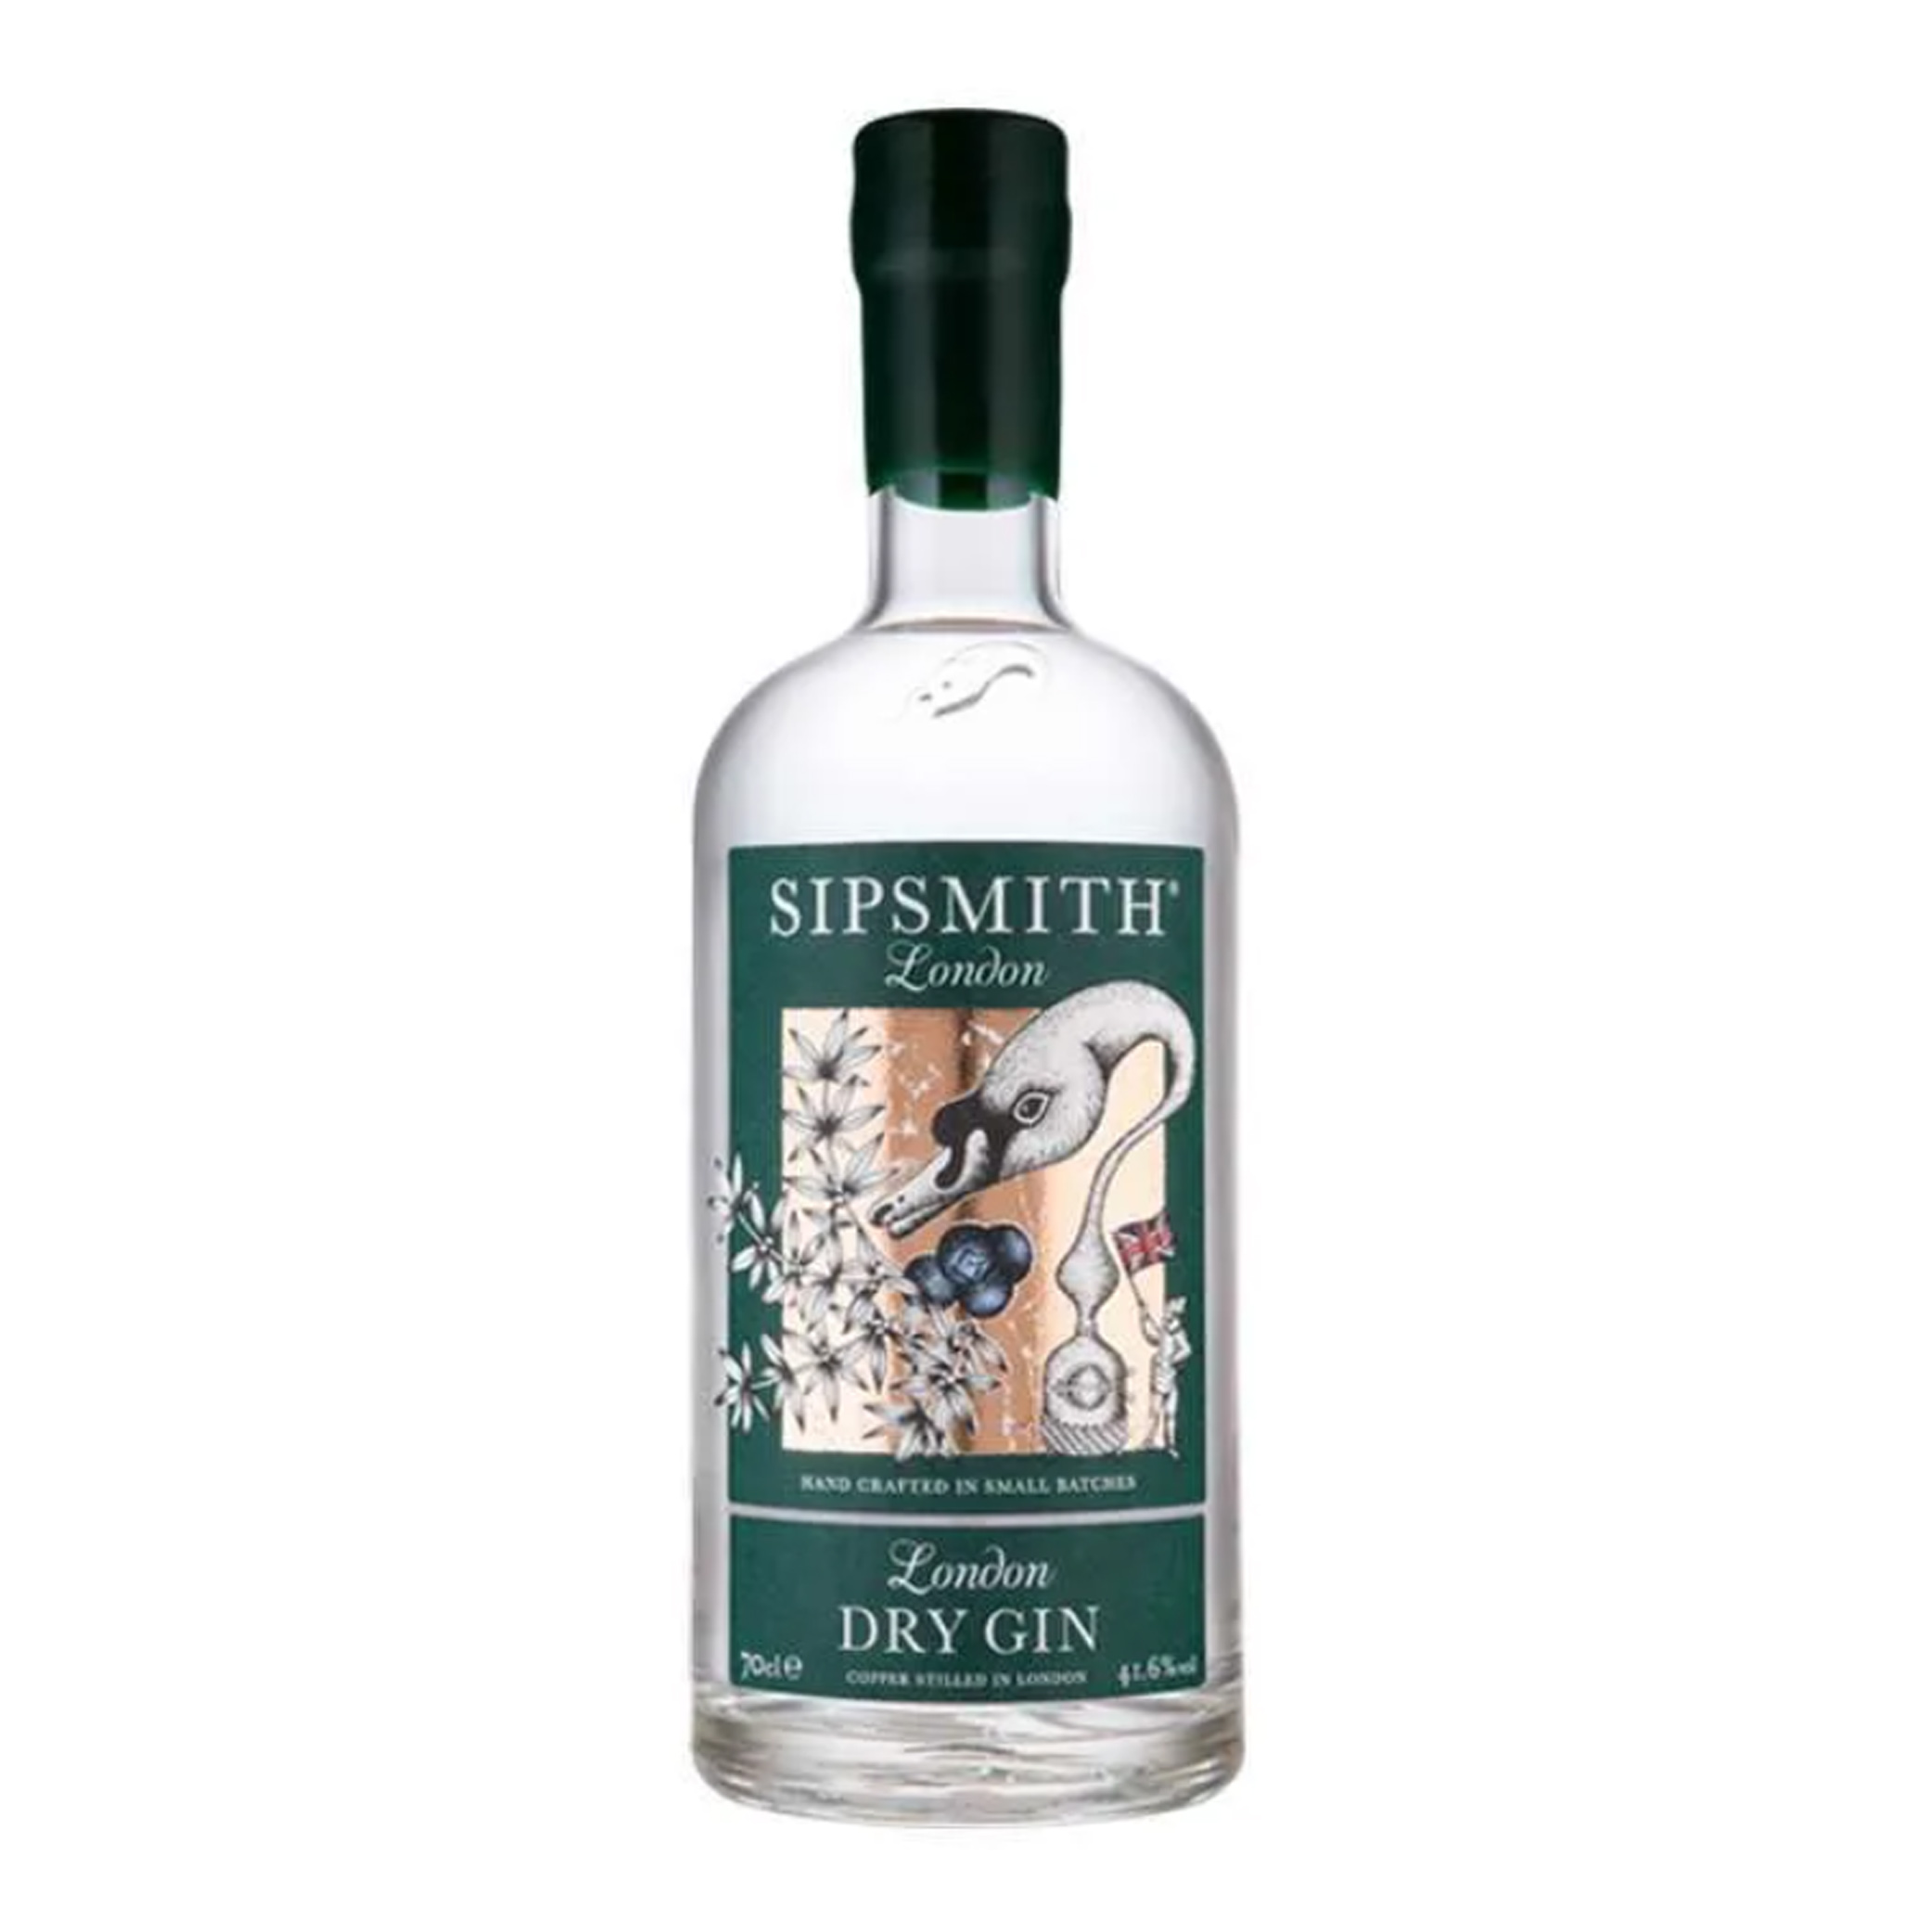 Sipsmith London Dry Gin - Pancaniaga Indoperkasa